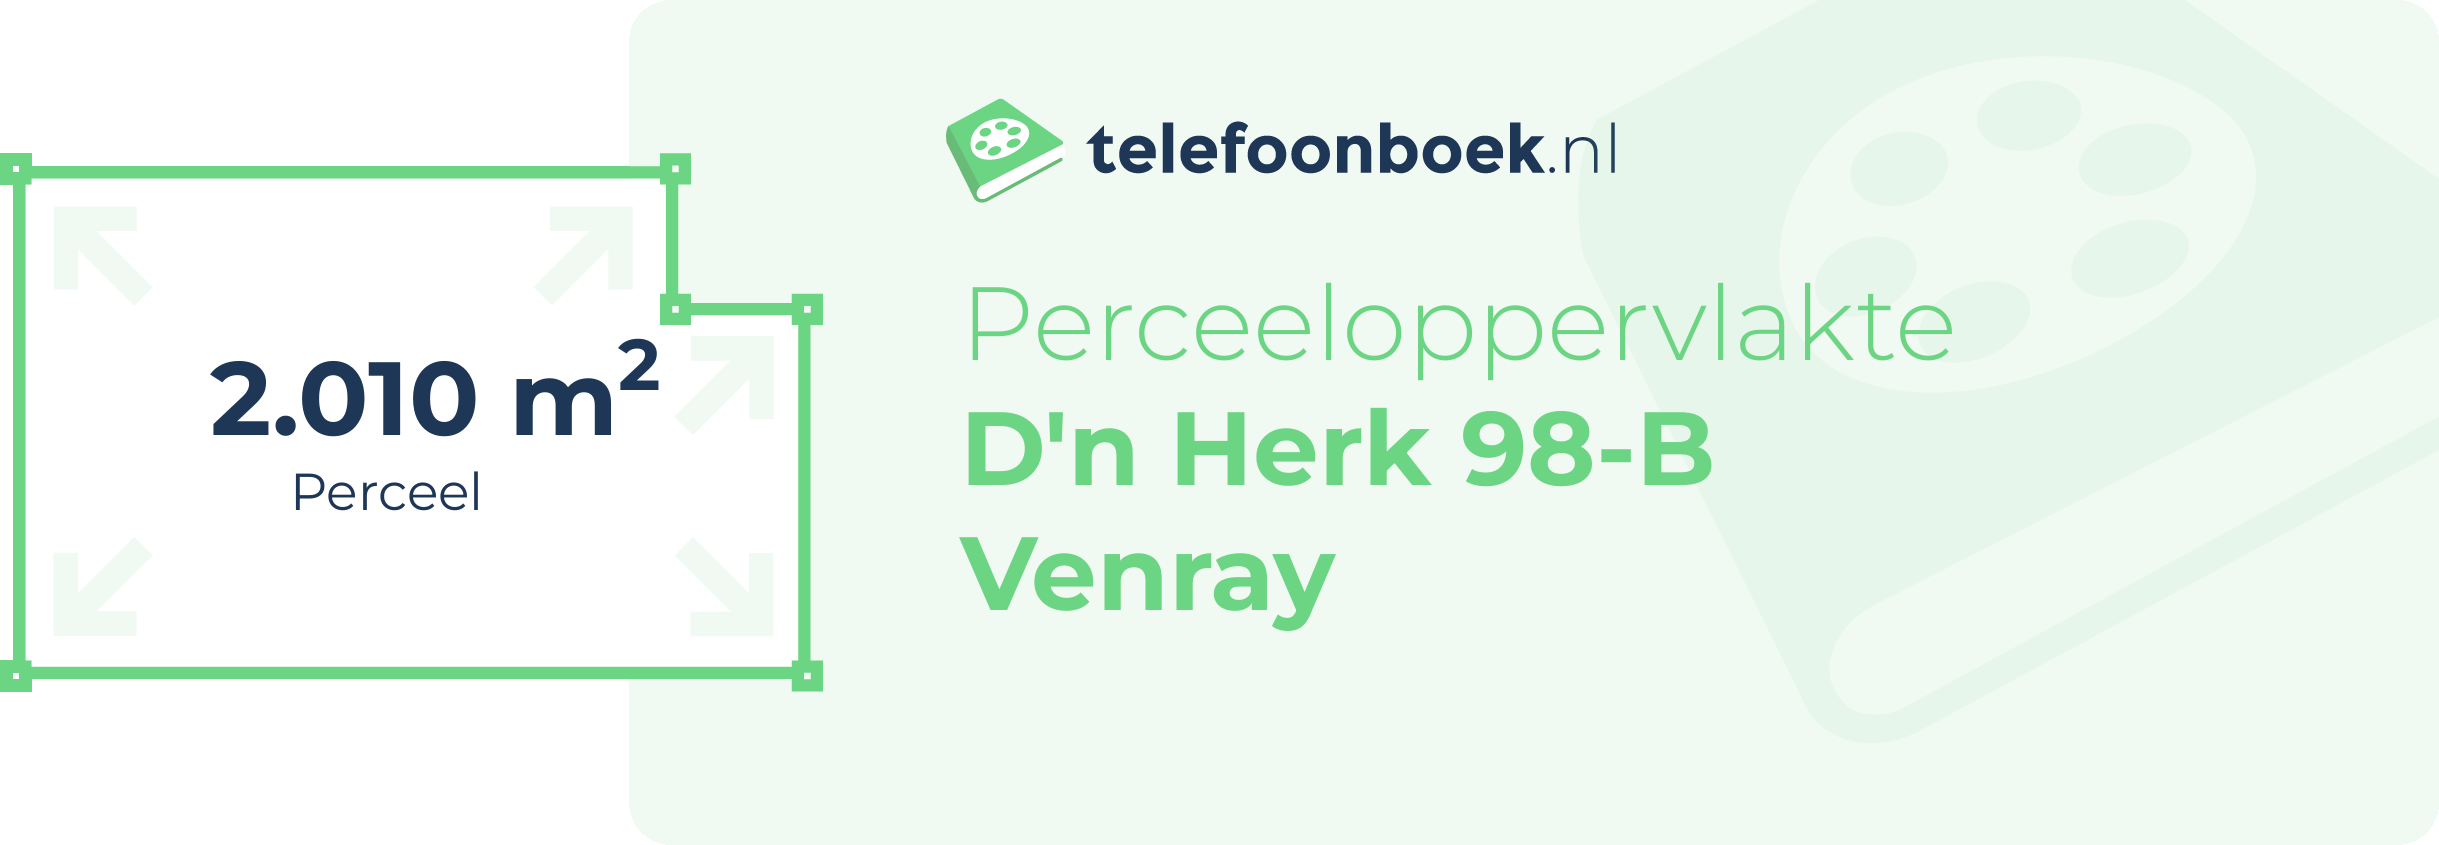 Perceeloppervlakte D'n Herk 98-B Venray